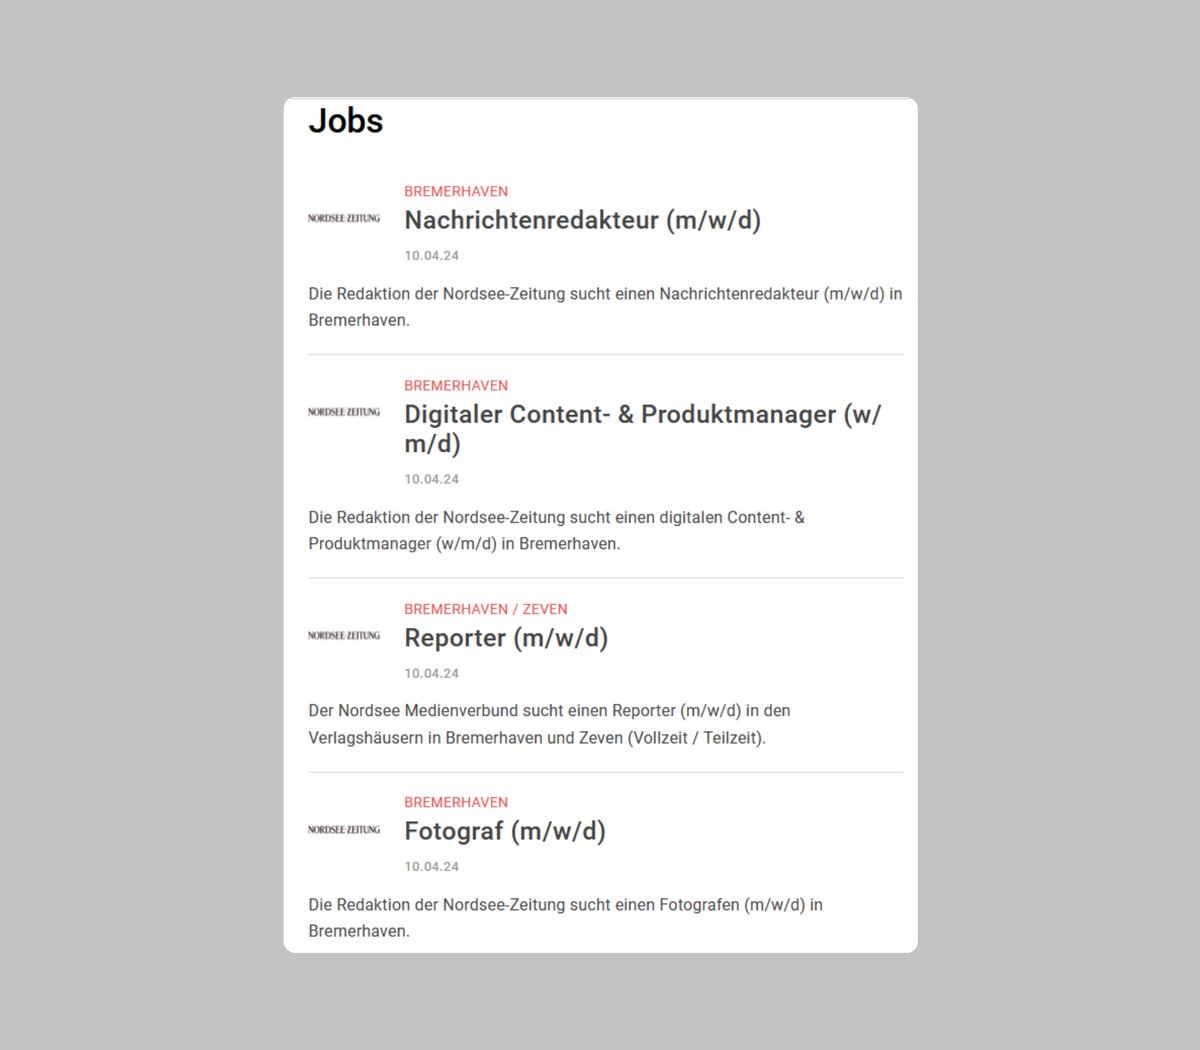 Die @nordseezeitung sucht einen Nachrichtenredakteur (m/w/d), einen digitalen Content- & Produktmanager (w/m/d), einen Reporter (m/w/d) und einen Fotografen (m/w/d) in Bremerhaven und Zeven. Alle Infos: journalist.de/startseite/jobs